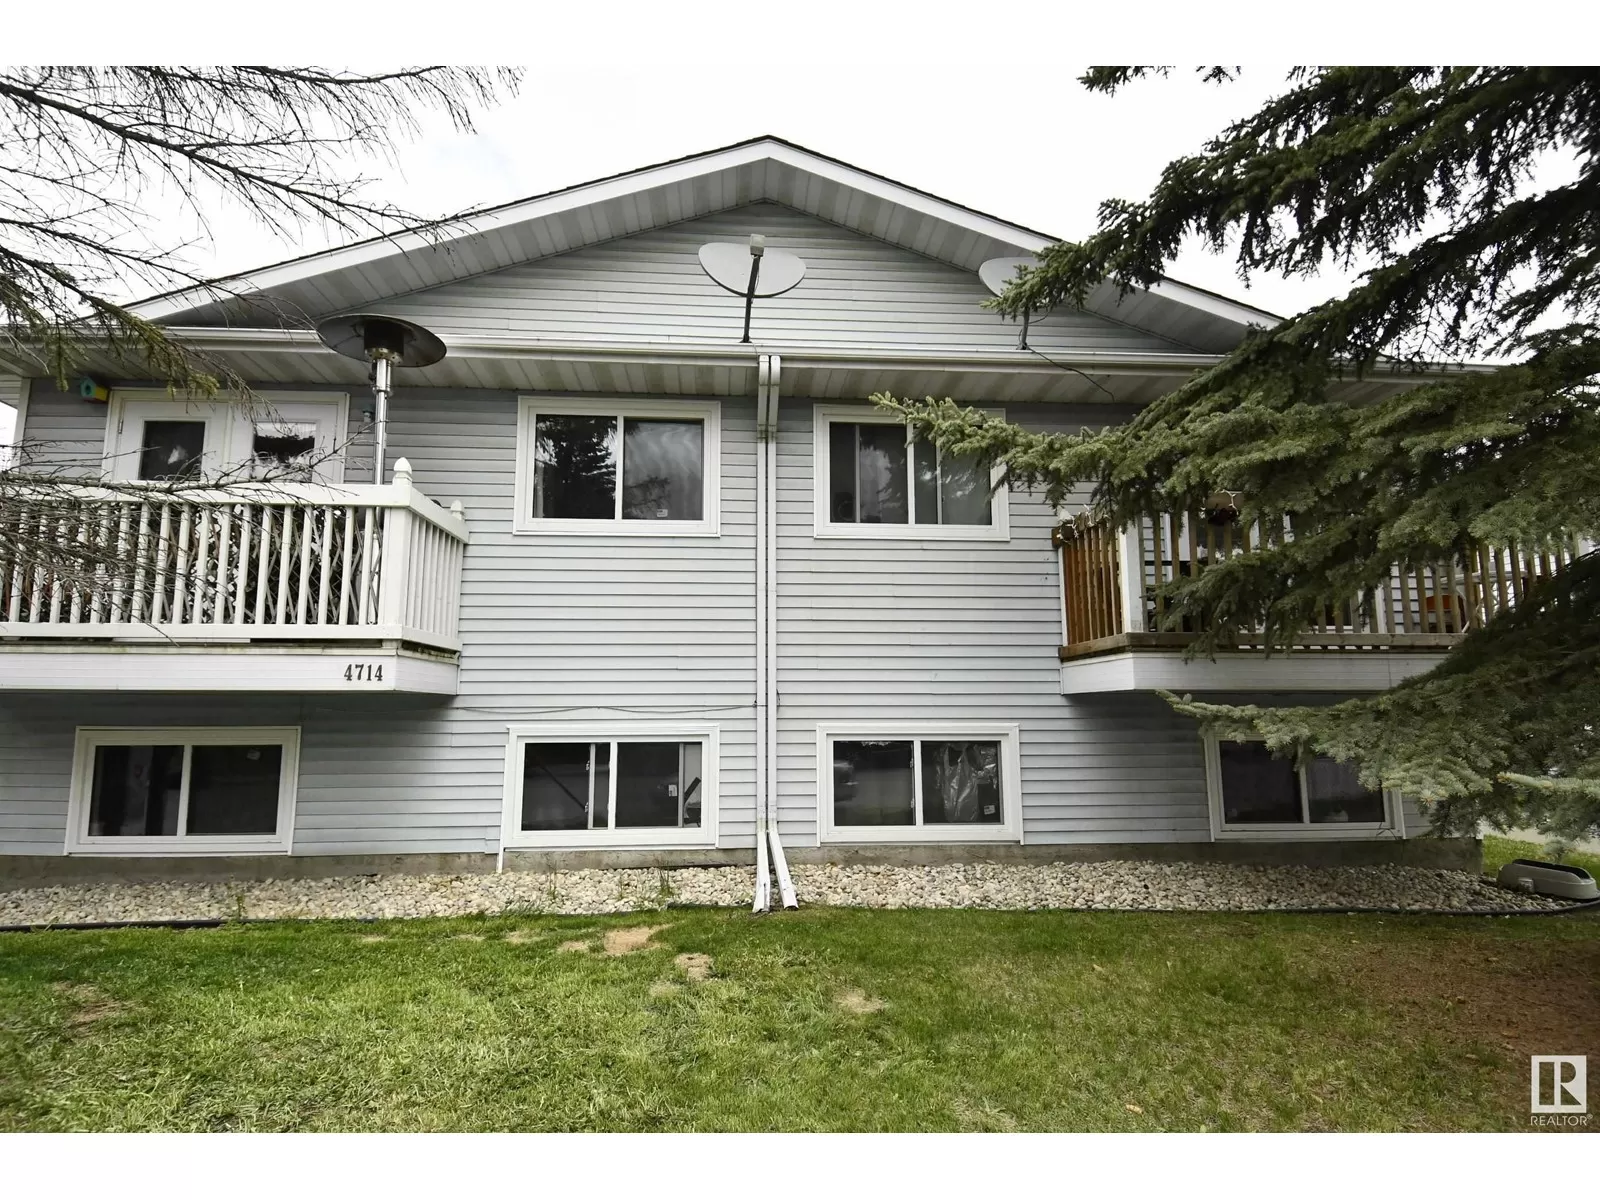 Fourplex for rent: 4714 54 Av, Leduc, Alberta T9E 6K4